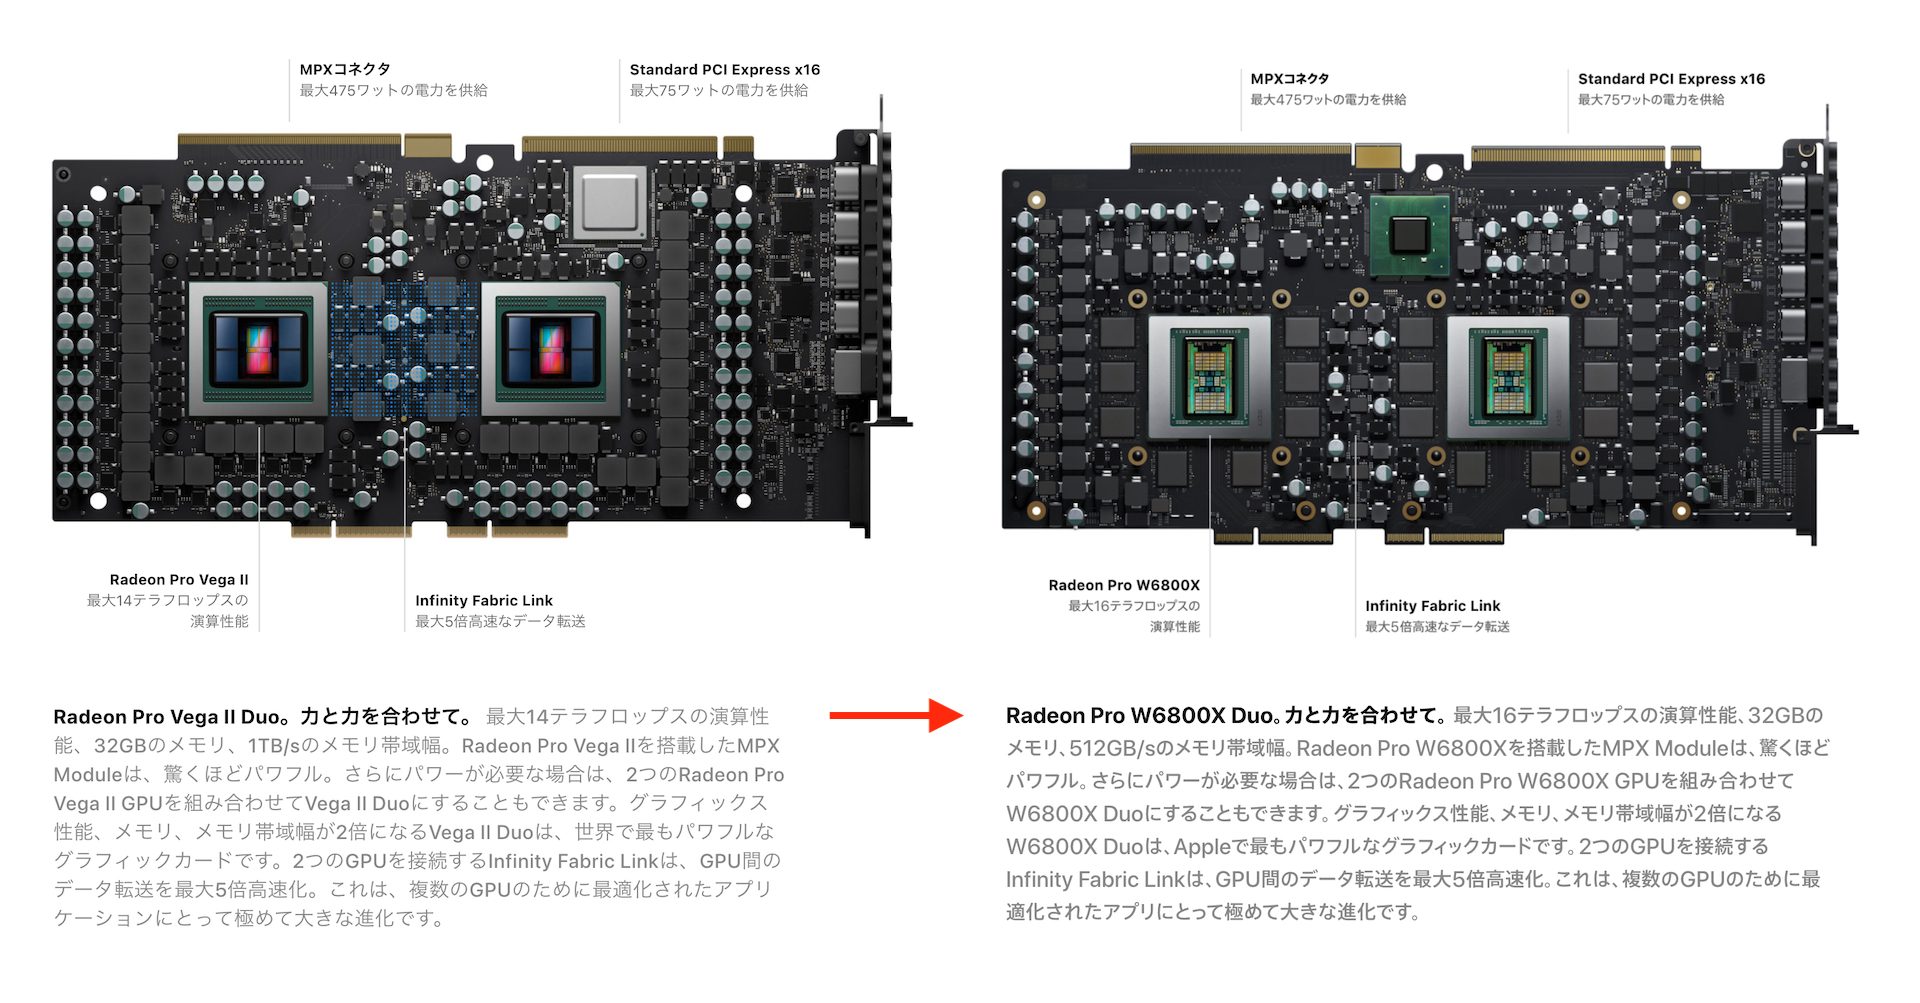 AMD Radeon Pro W6800X Duo